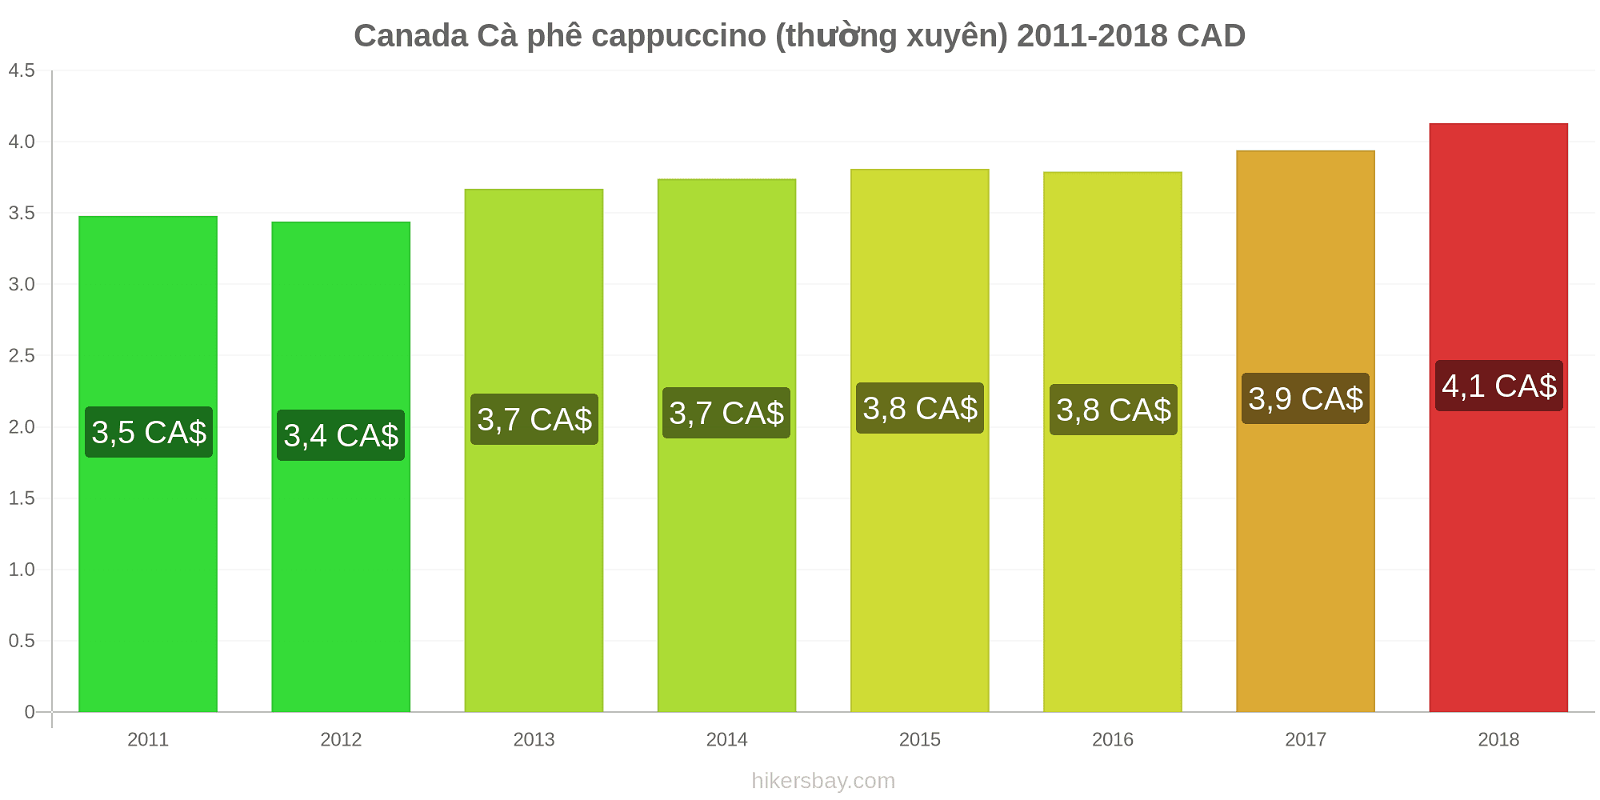 Canada thay đổi giá cả Cà phê cappuccino hikersbay.com